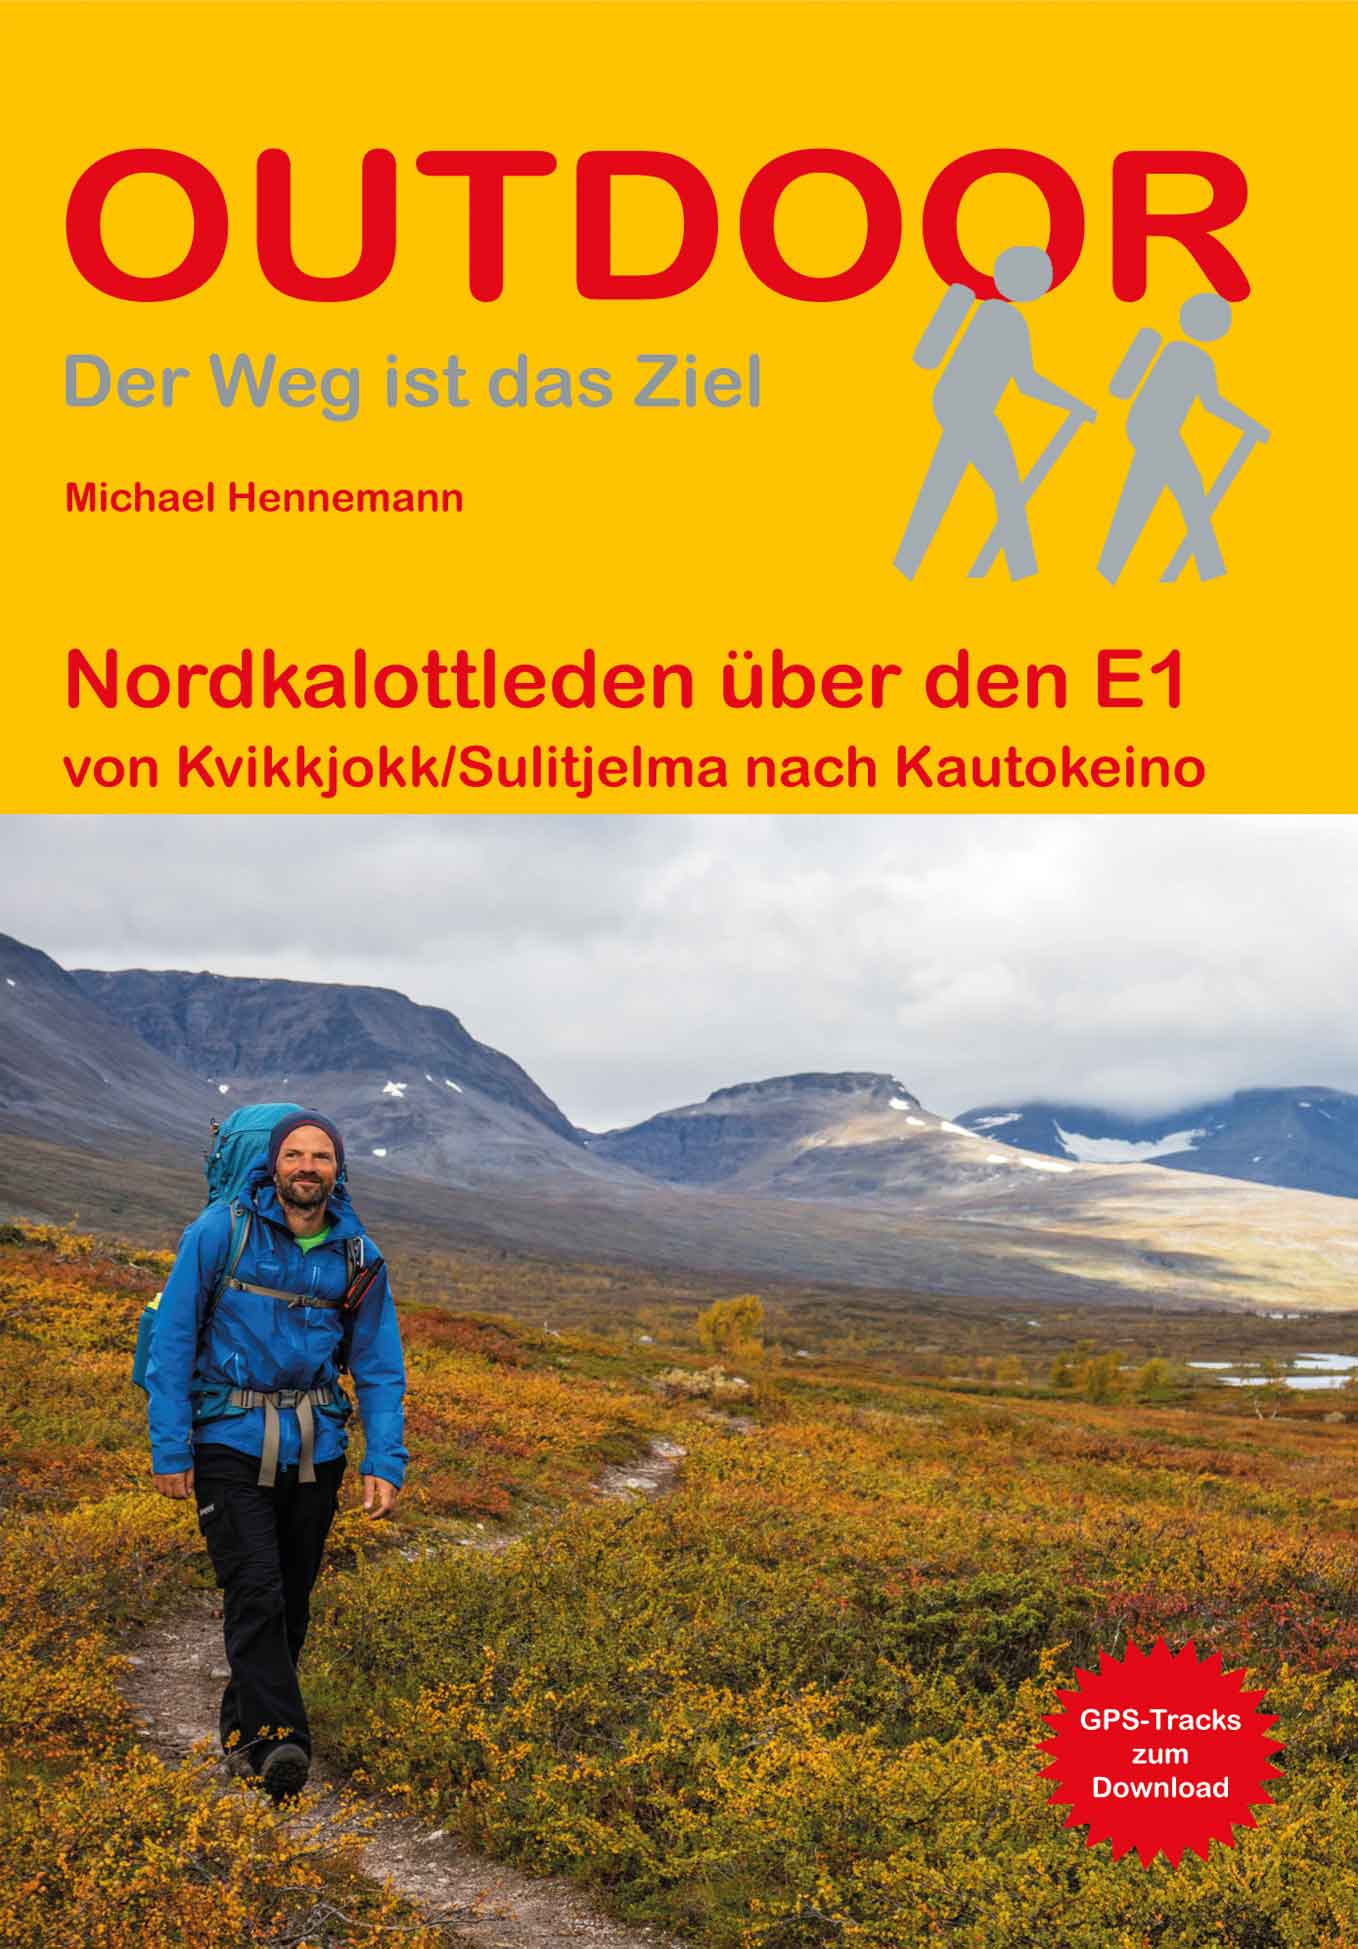 Nordkalottleden | wandelgids (Duitstalig) 9783866866706  Conrad Stein Verlag Outdoor - Der Weg ist das Ziel  Meerdaagse wandelroutes, Wandelgidsen Lapland